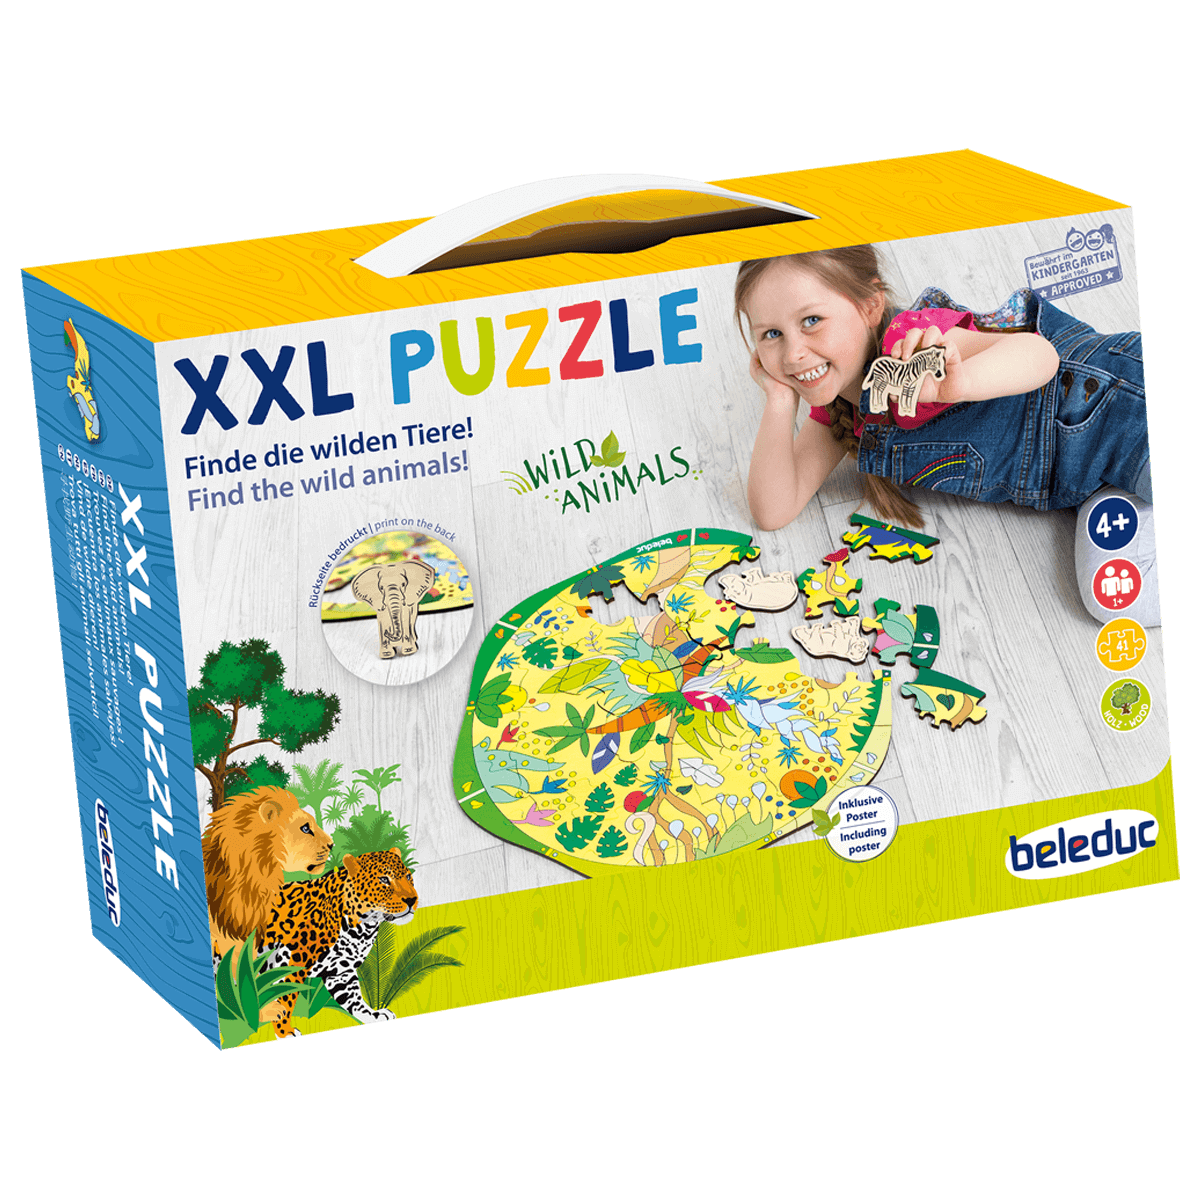 XXL Puzzle "Wild Animals"